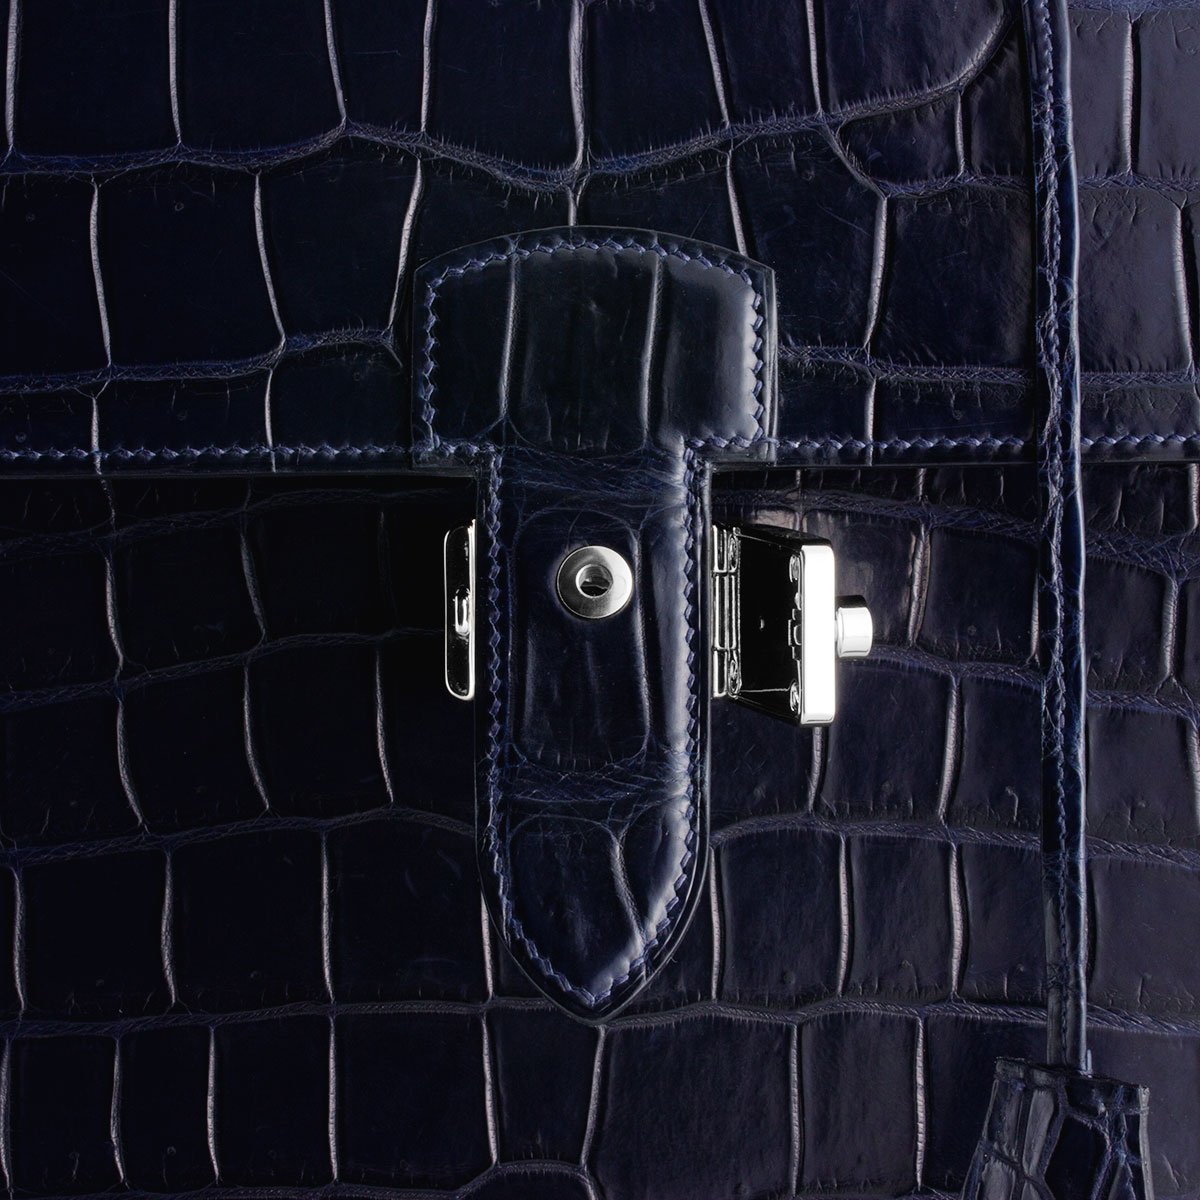 Serviette Business en Cuir - Alligator (noir, bleu) - watch band leather strap - ABP Concept -